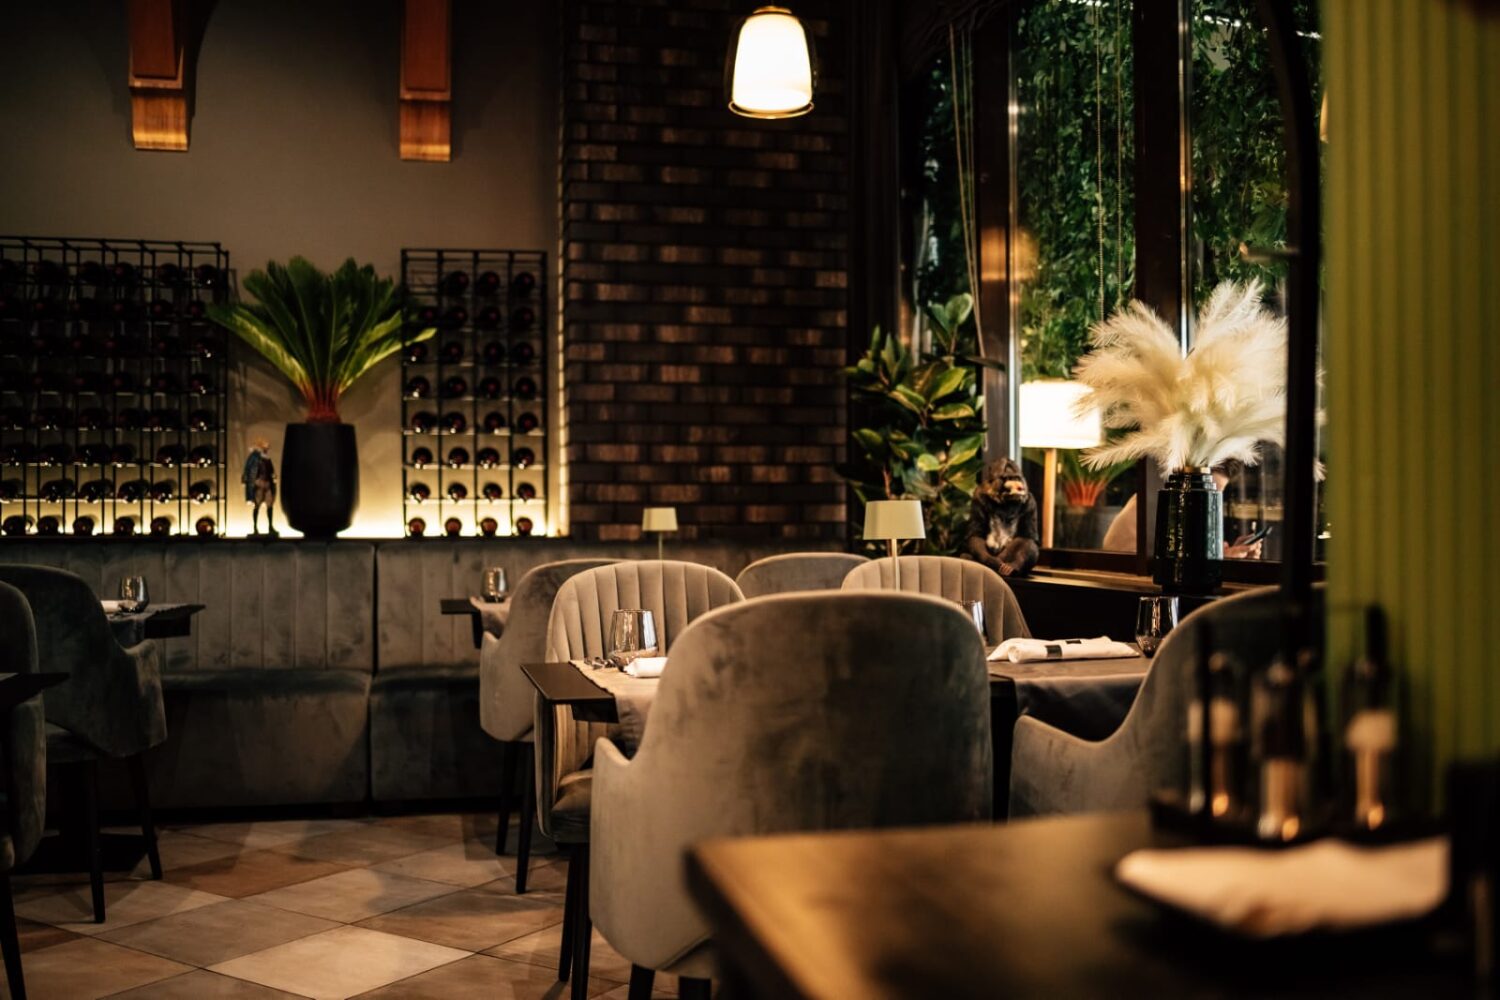 mese cu scaune capitonate, bej, iar in fundal barul cu rafturi cu stile, totul in lumina difuza, la restaurant L’Evoque 360, unul din restaurante romantice București